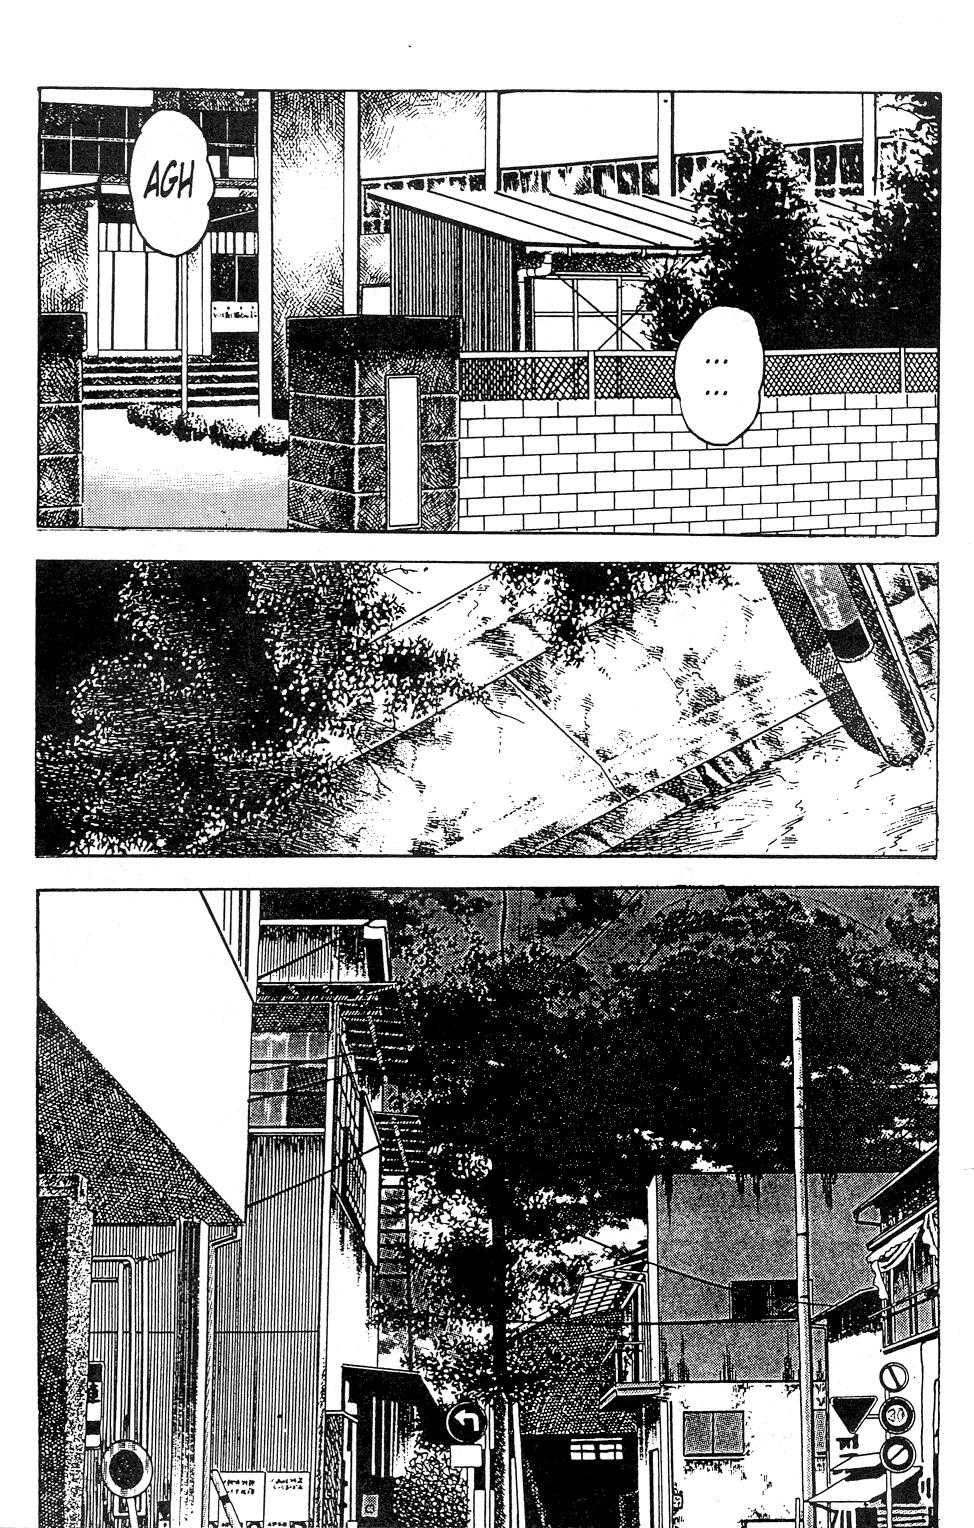 [Manga18][Toshio Maeda] Urotsukidoji - Return of the Overfiend No 3 (english) 